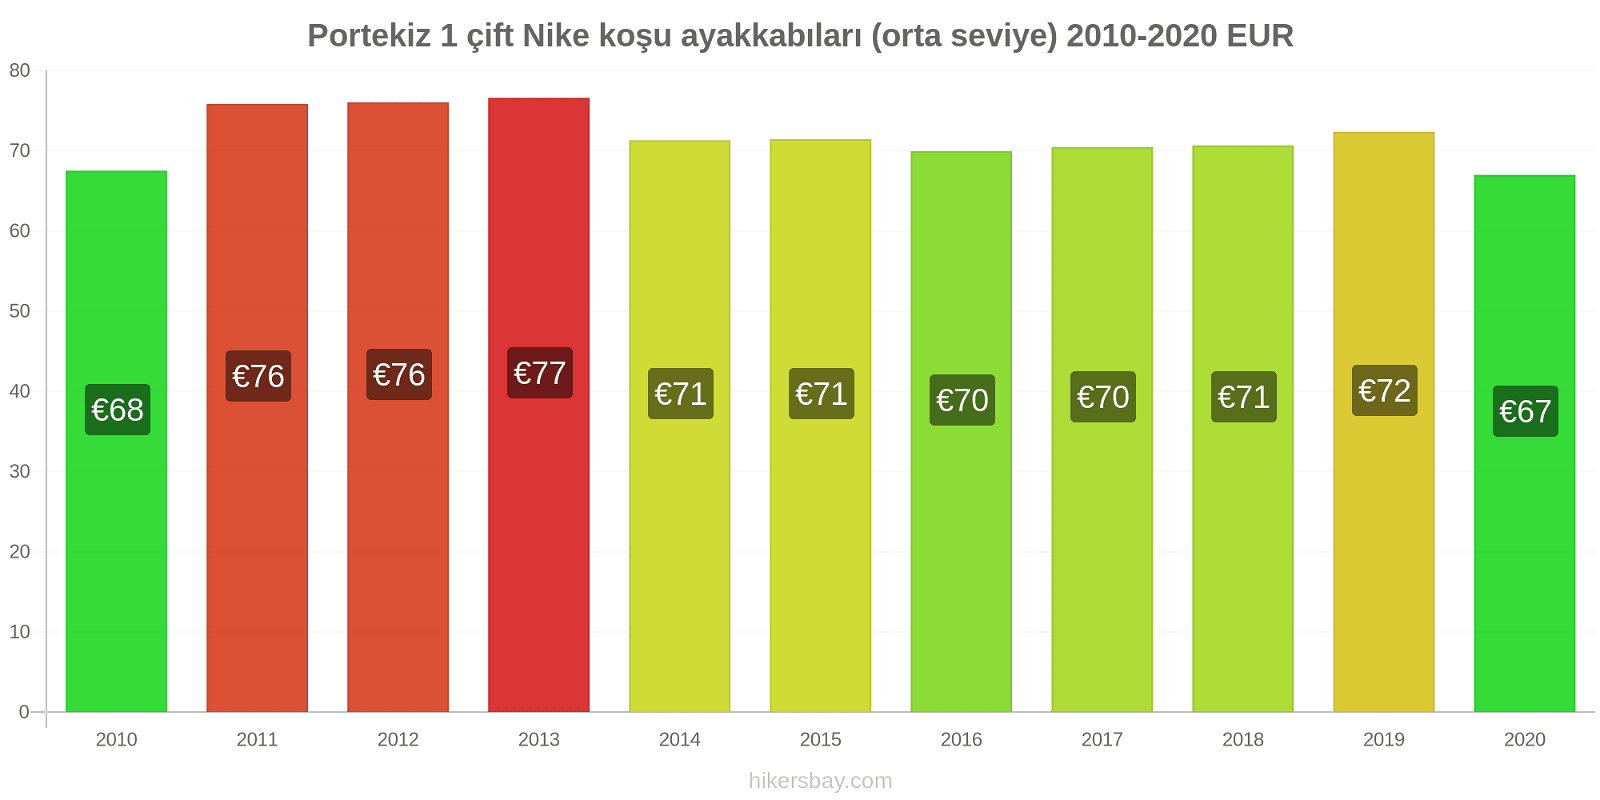 Portekiz fiyat değişiklikleri 1 çift Nike koşu ayakkabıları (orta seviye) hikersbay.com